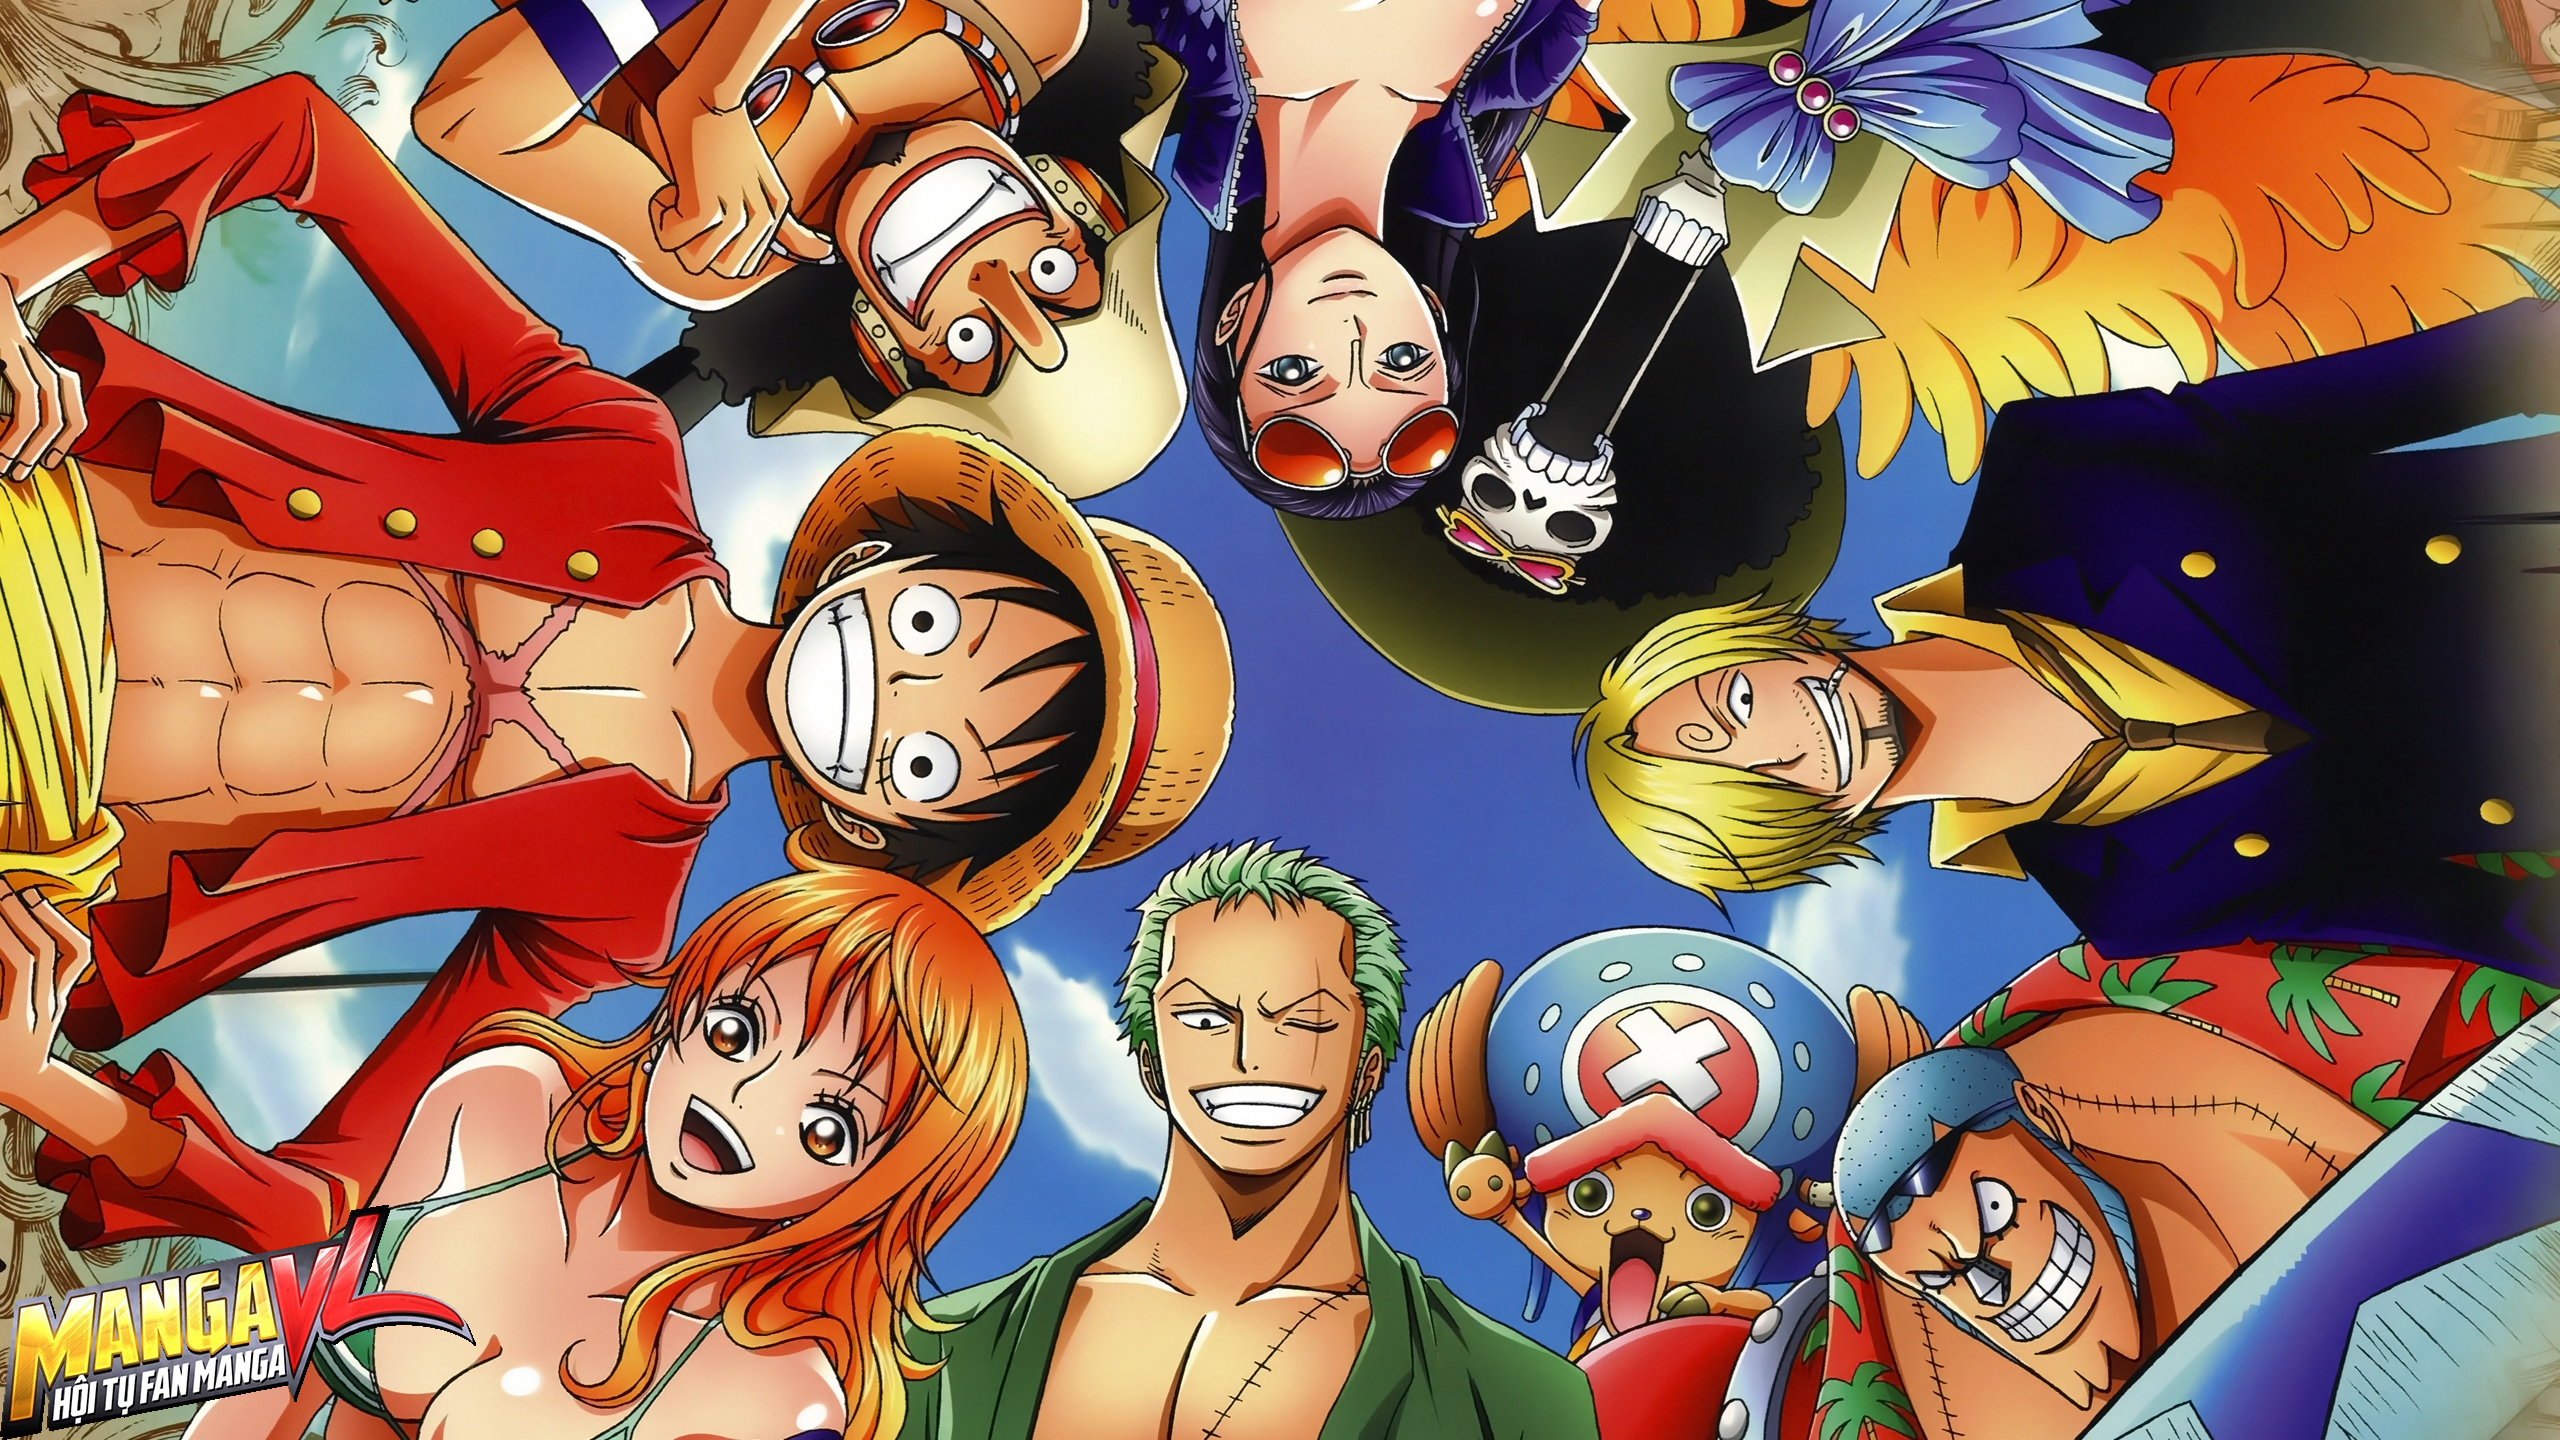 Nhân vật nữ One Piece đẹp: Bạn là một fan của các nhân vật nữ trong bộ truyện One Piece? Hãy cùng khám phá ngay những hình ảnh lung linh về các nữ nhân vật trong truyện. Các nhân vật với ngoại hình và tính cách đa dạng sẽ khiến bạn say đắm và thích thú. Hãy xem ngay để có những trải nghiệm thú vị bạn nhé!